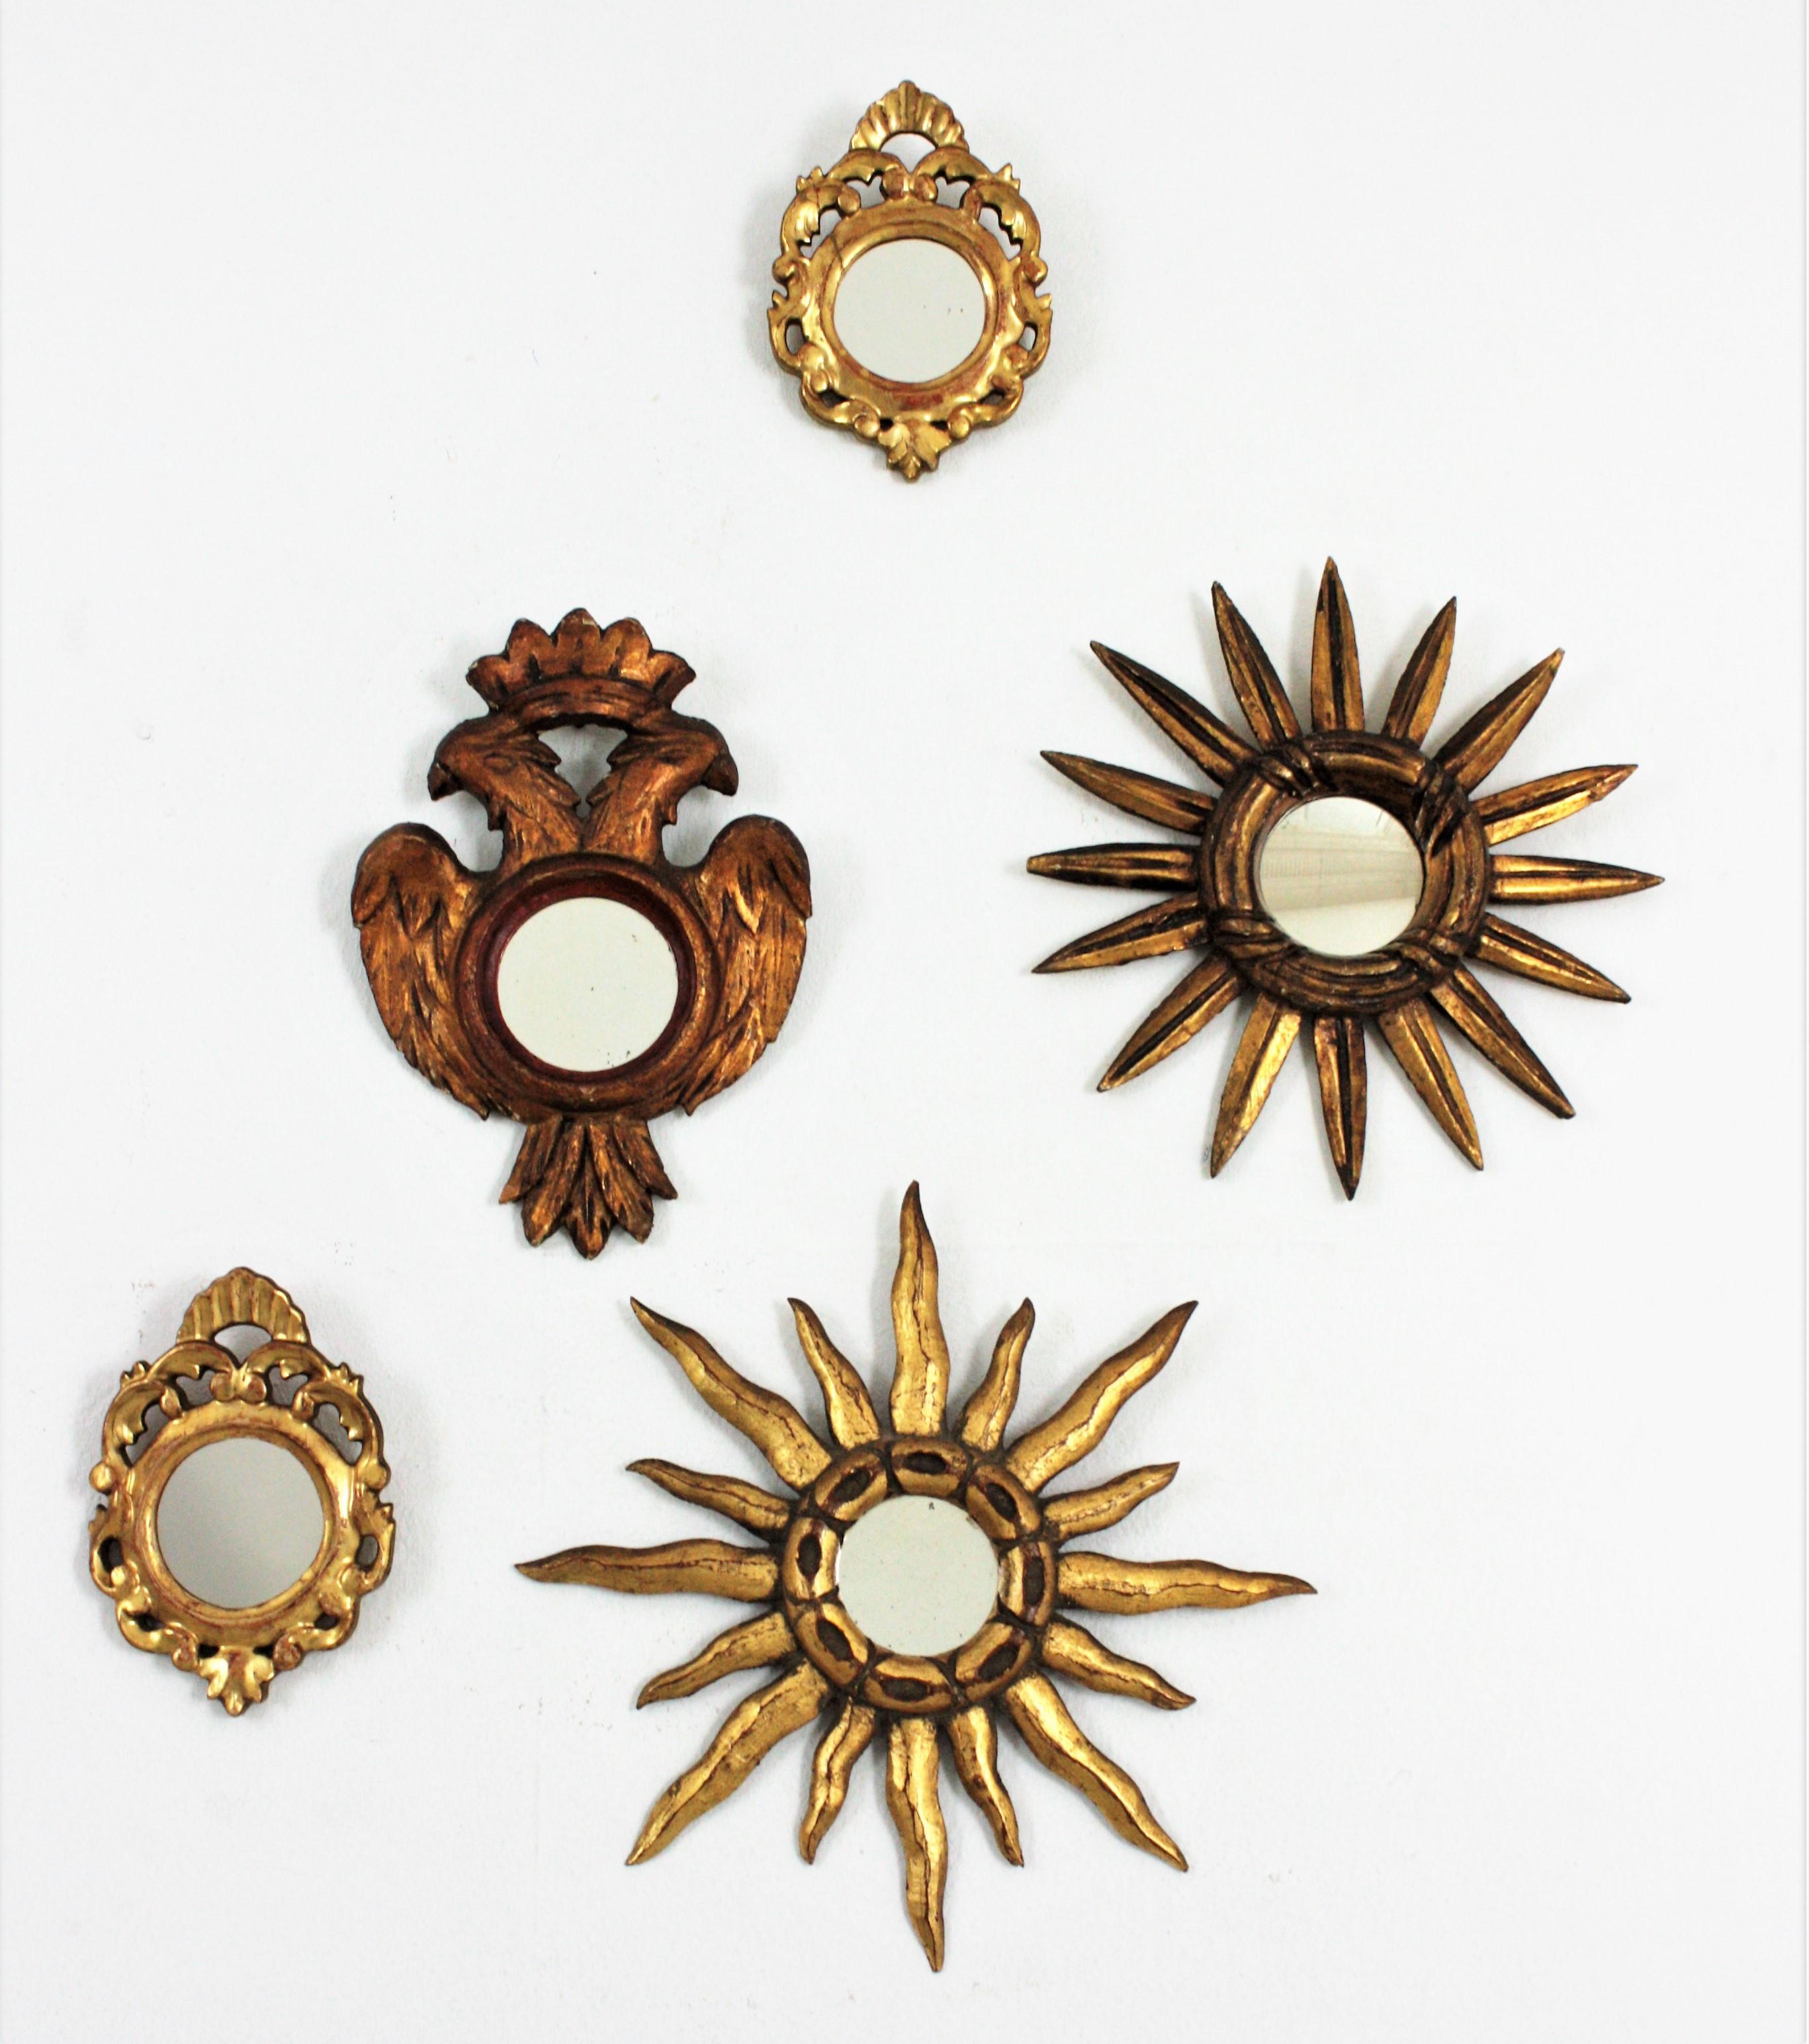 Paar Rokokospiegel im Mini-Format, vergoldetes Holz, Blattgold, Spanien, 1930er Jahre
Diese beiden kleinen, runden Spiegel im Rokoko-Stil haben geschnitzte, vergoldete Rahmen. 
Ungewöhnliche Stücke aufgrund ihrer Größe.
Schöne gealterte Patina,